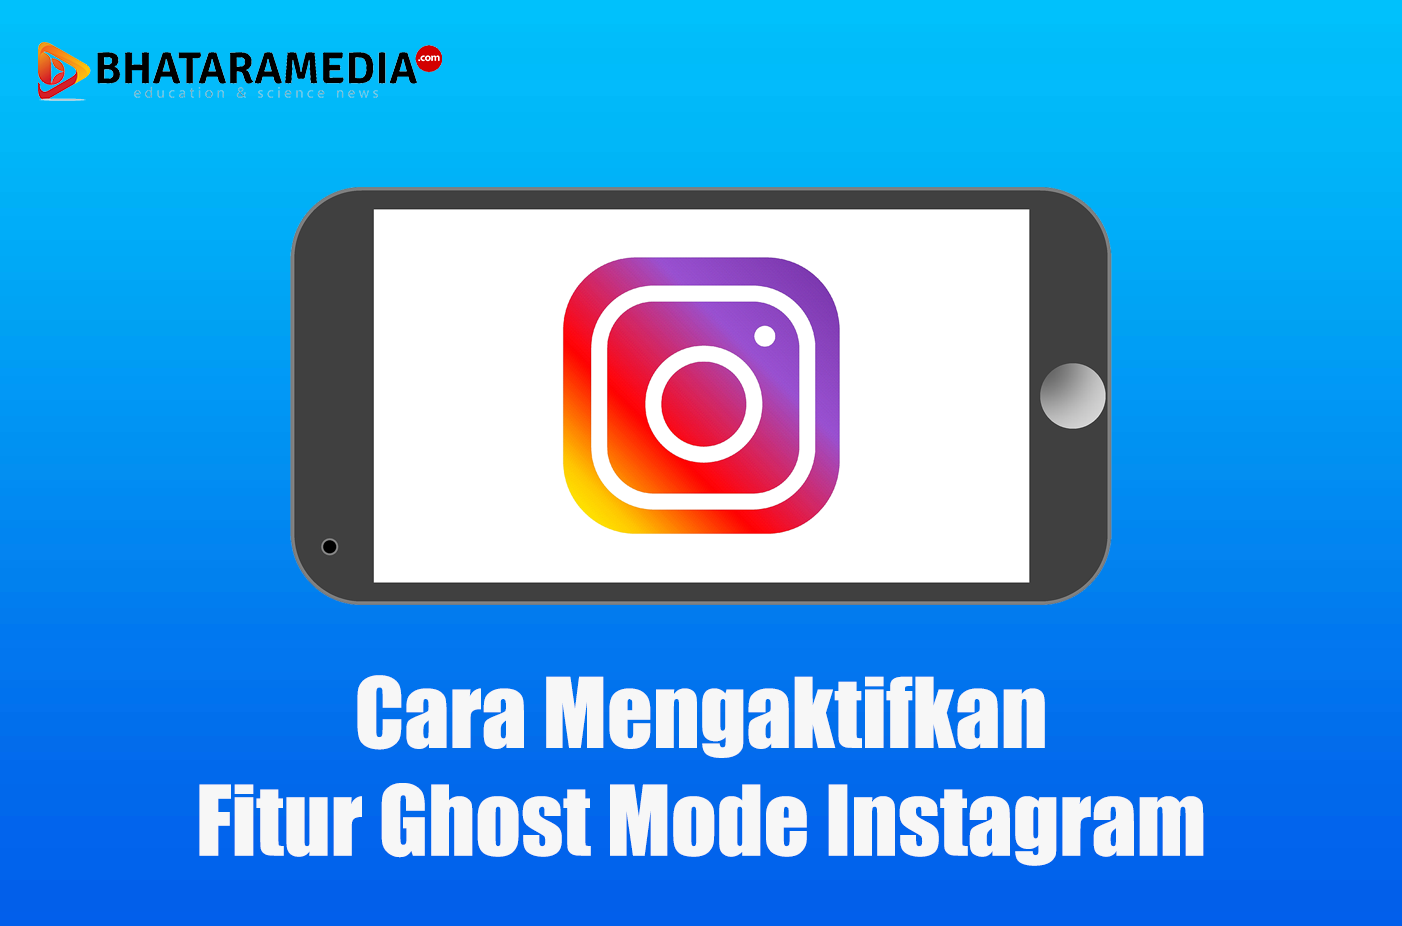 Cara Mengaktifkan Fitur Ghost Mode Instagram